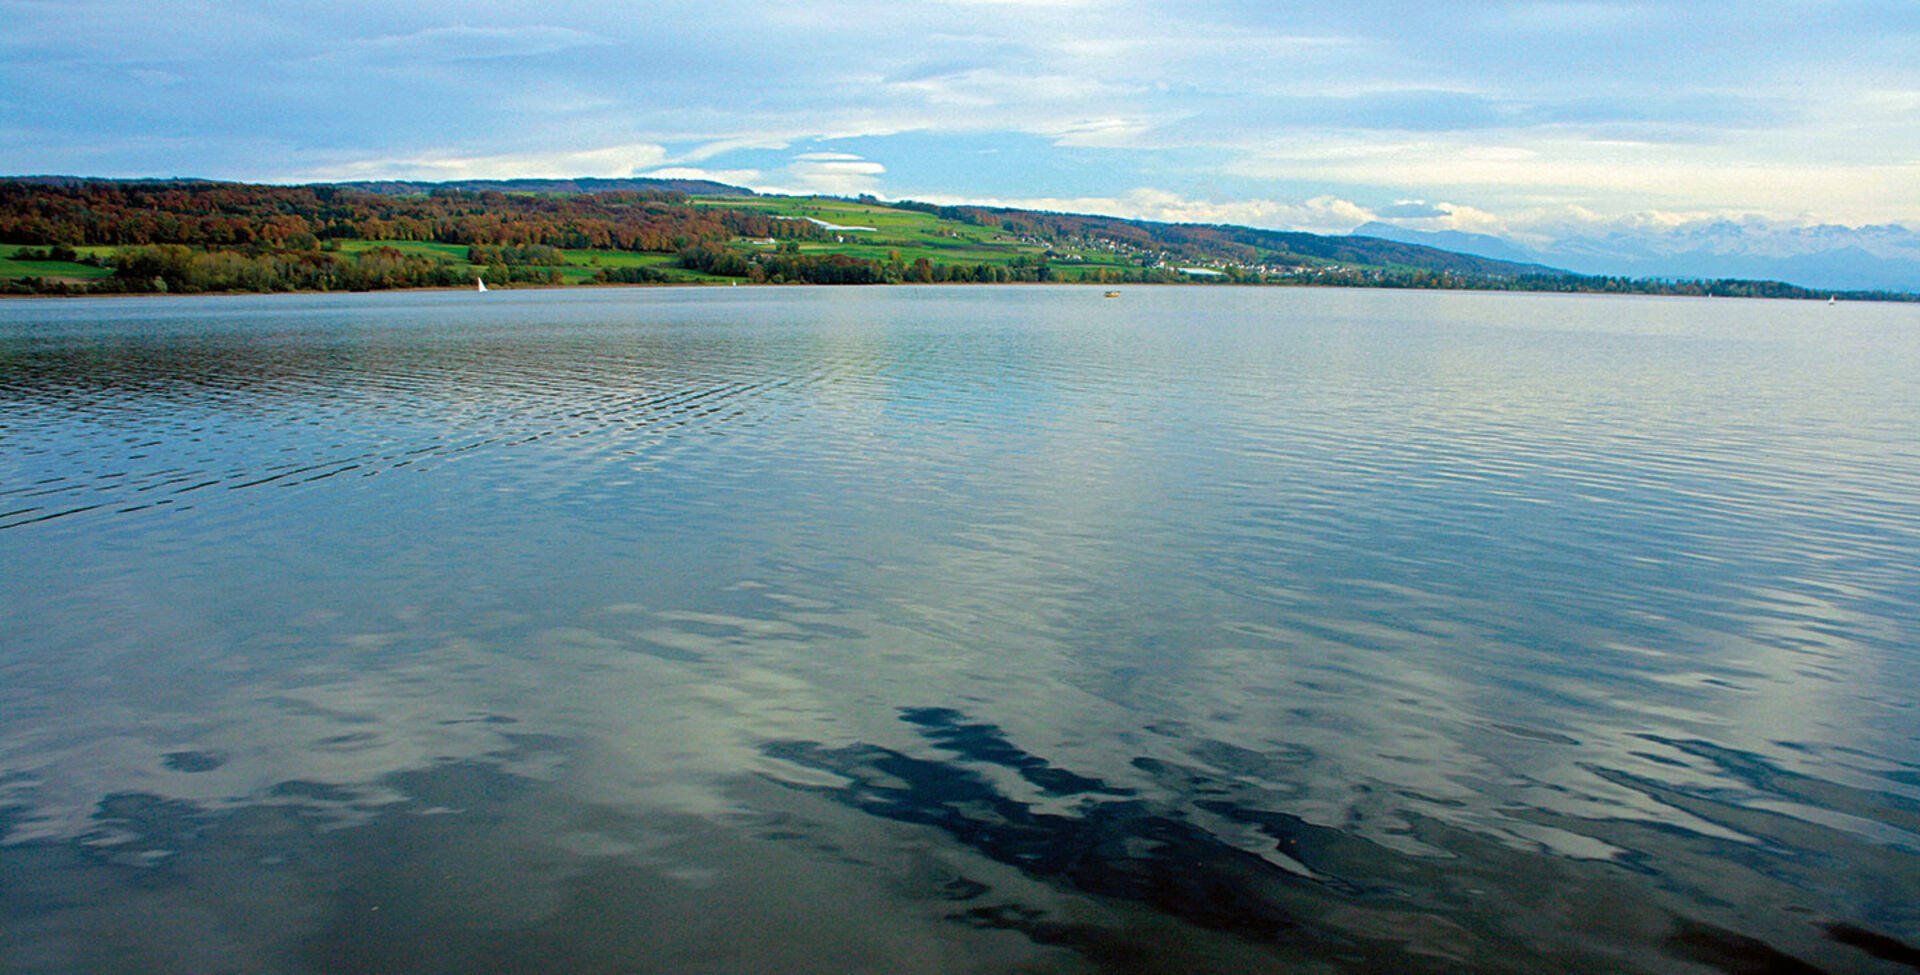  Der Hallwilersee war einer der am stärksten mit Nährstoffen belasteten Seen. Dies hat erhebliche Auswirkungen auf die Sauerstoffverhältnisse in grösseren Tiefen und kann die natürliche Fortpflanzung von lachsartigen Fischen stark einschränken oder verunmöglichen.  